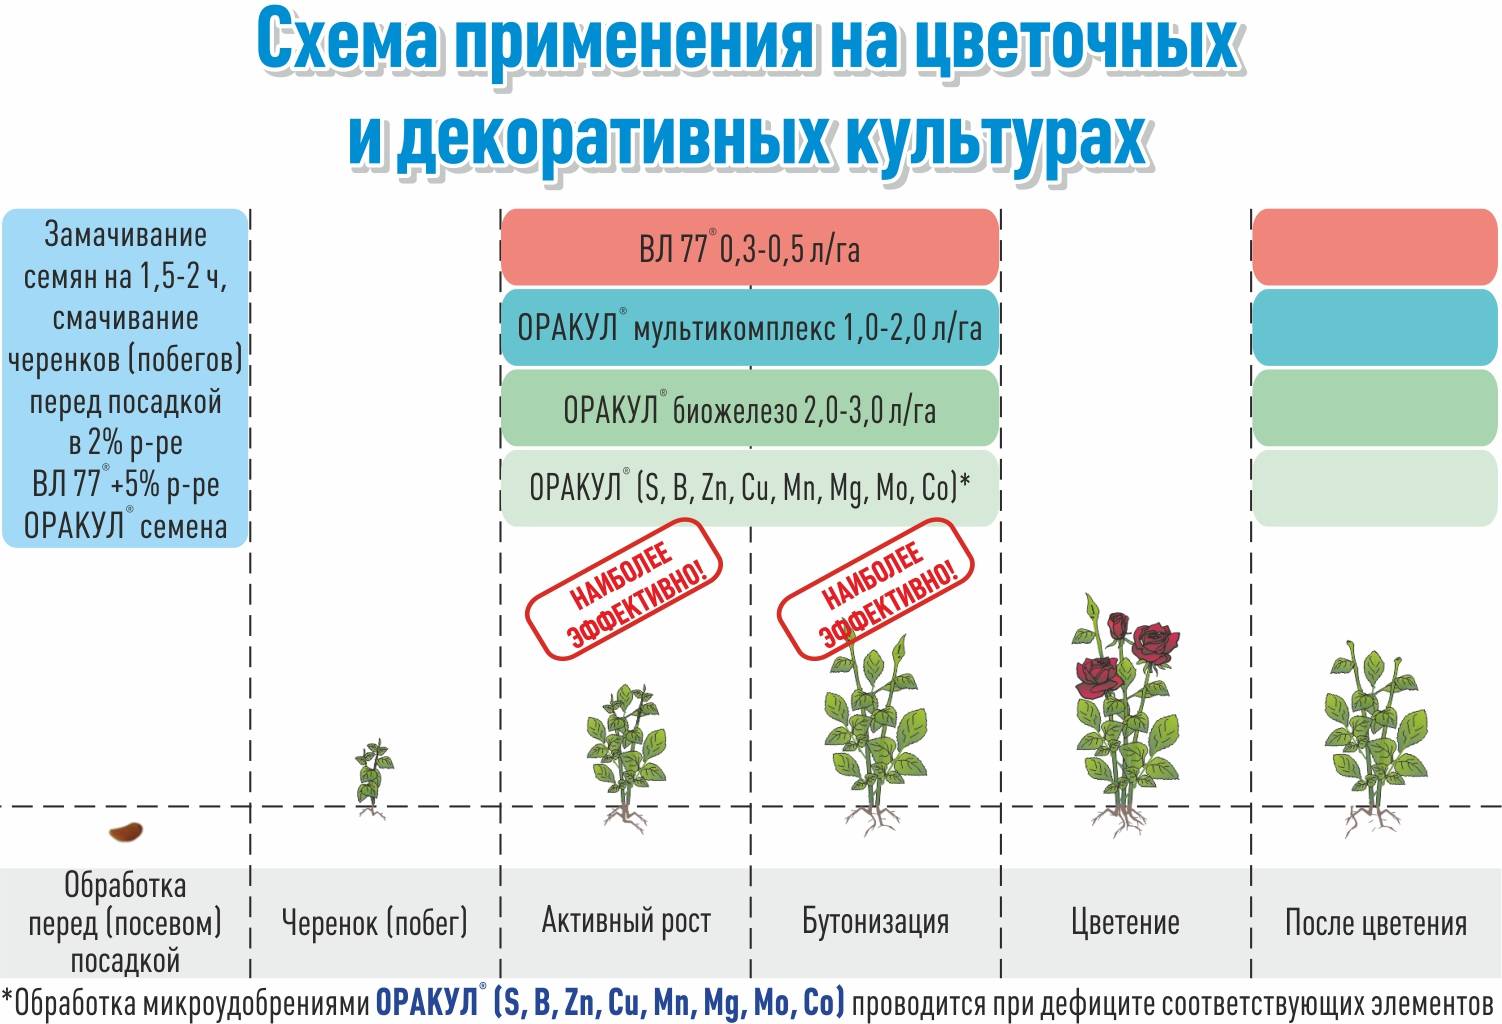 Стимуляторы и регуляторы роста растений: циркон, эпин, гуматы, атлет, байкал-эм1, стимулятор нарцисс, корневин, как разводить